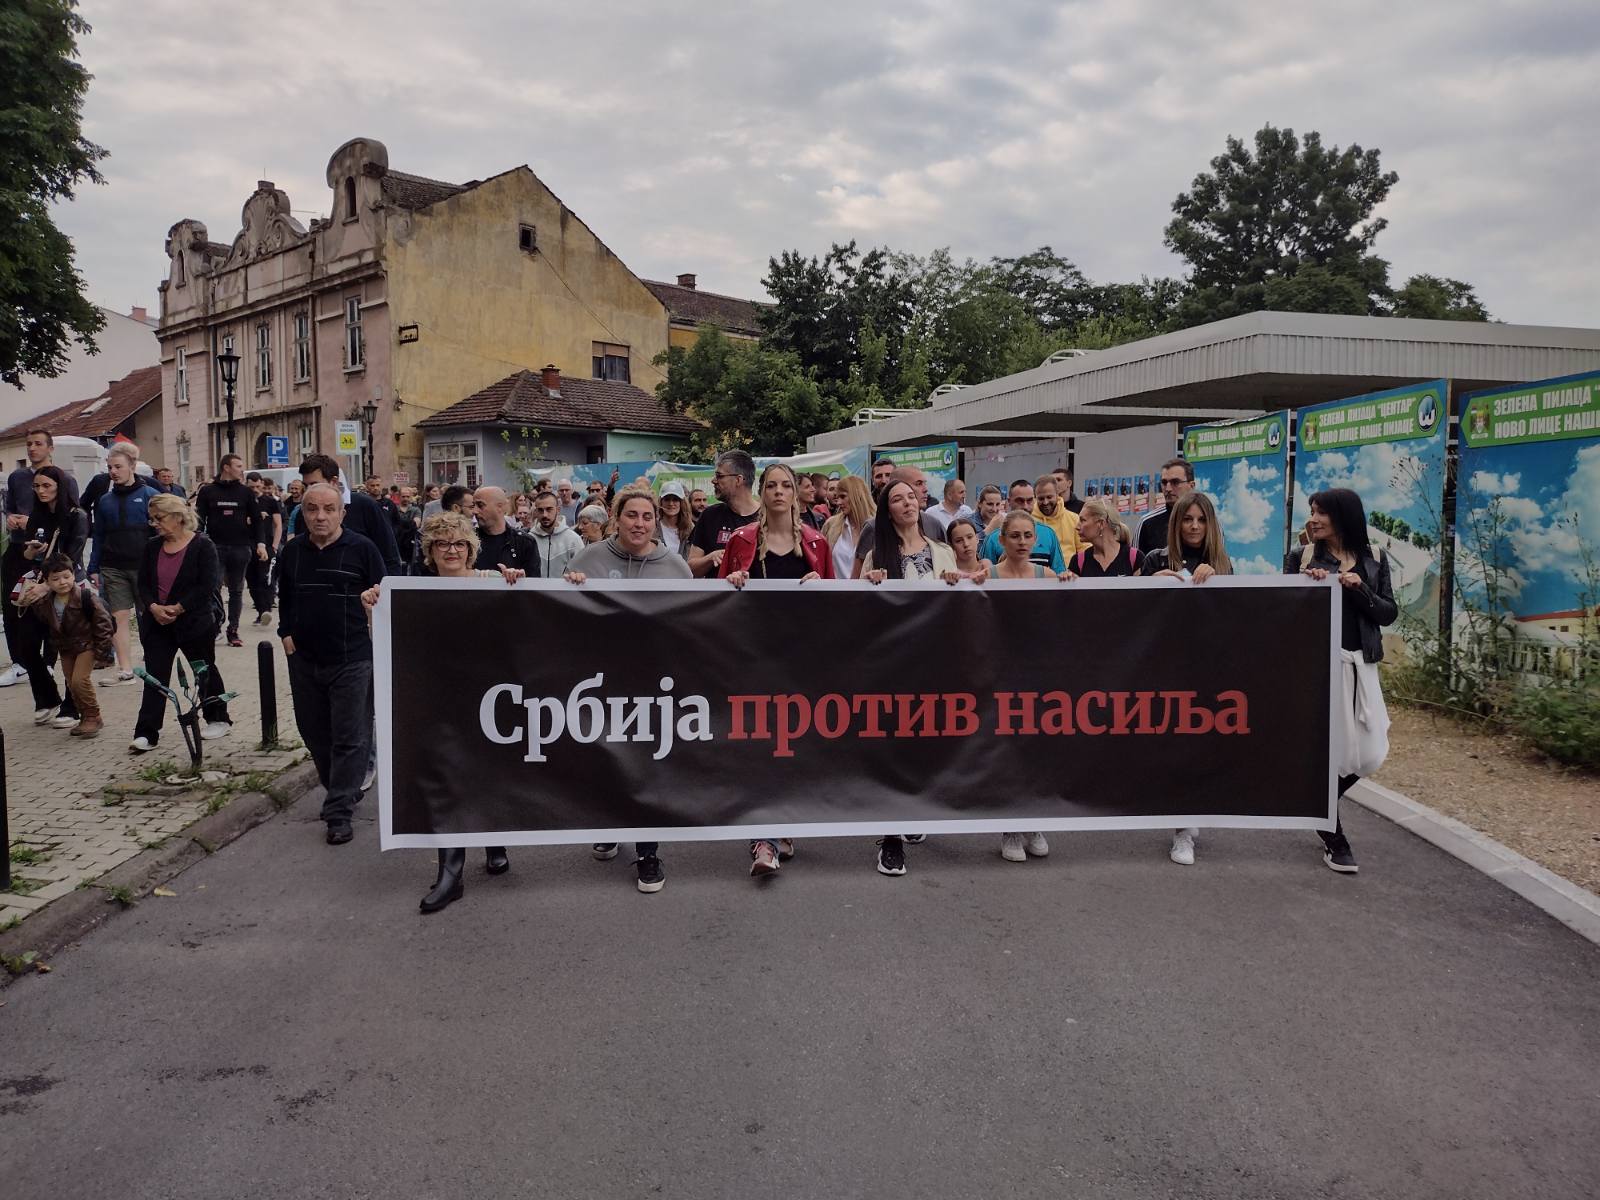 Završen sedmi protest "Srbija protiv nasilja", sledeće nedelje protest u još 10 gradova ako se ne ispune zahtevi 7